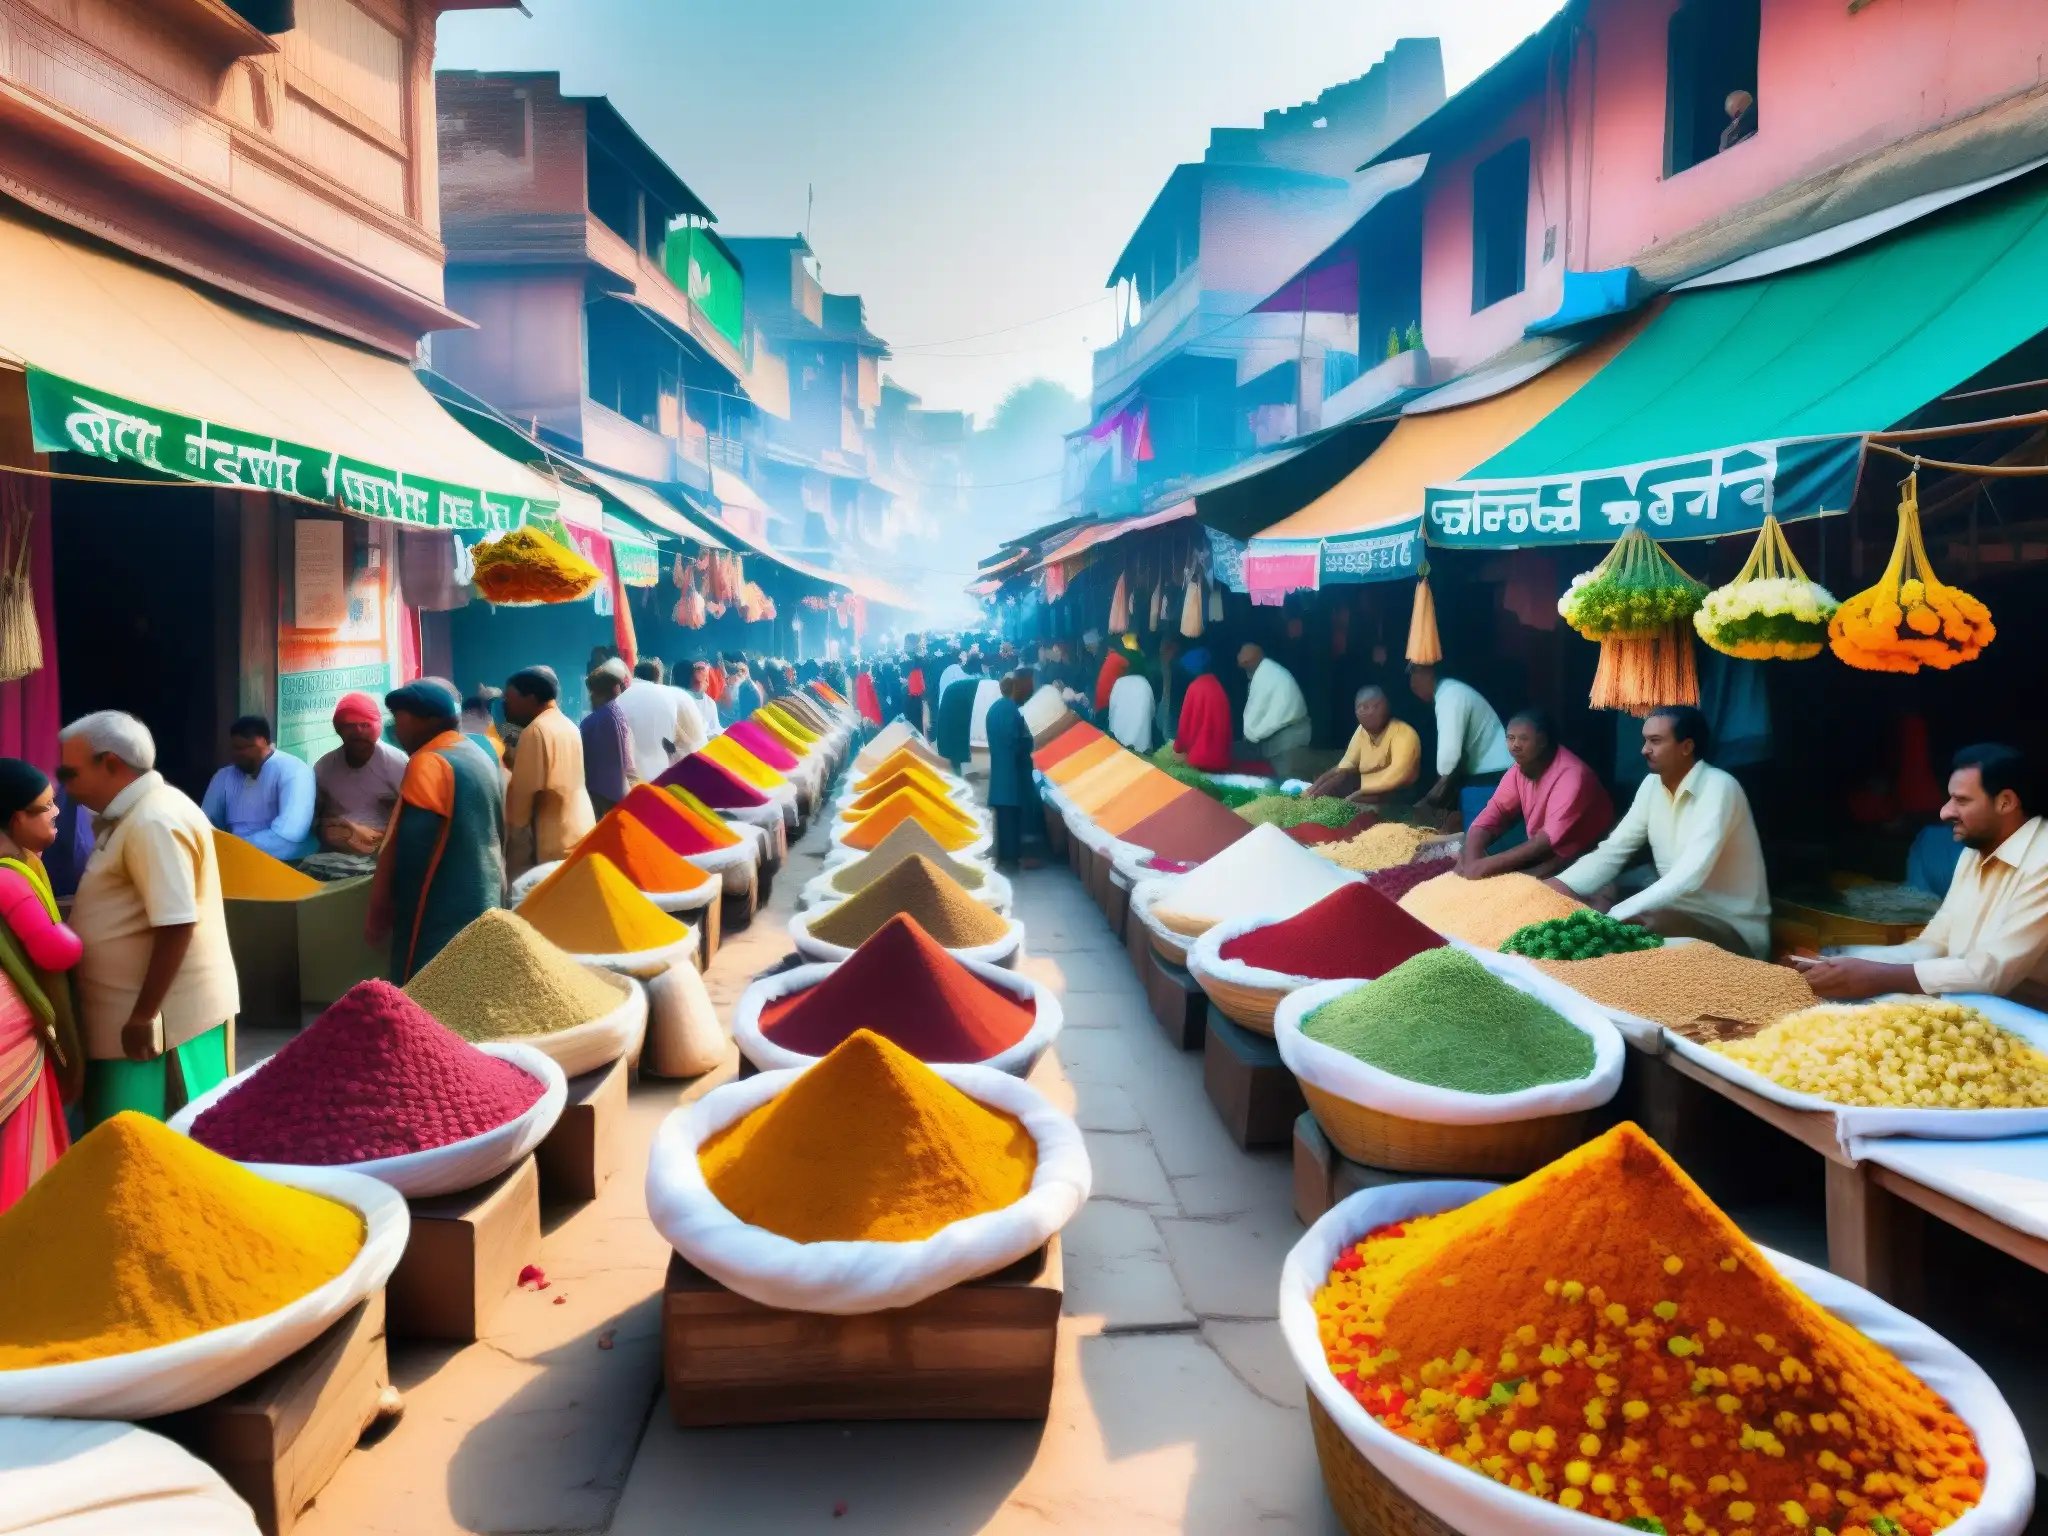 Un bullicioso mercado en Varanasi, India, rebosante de color y cultura